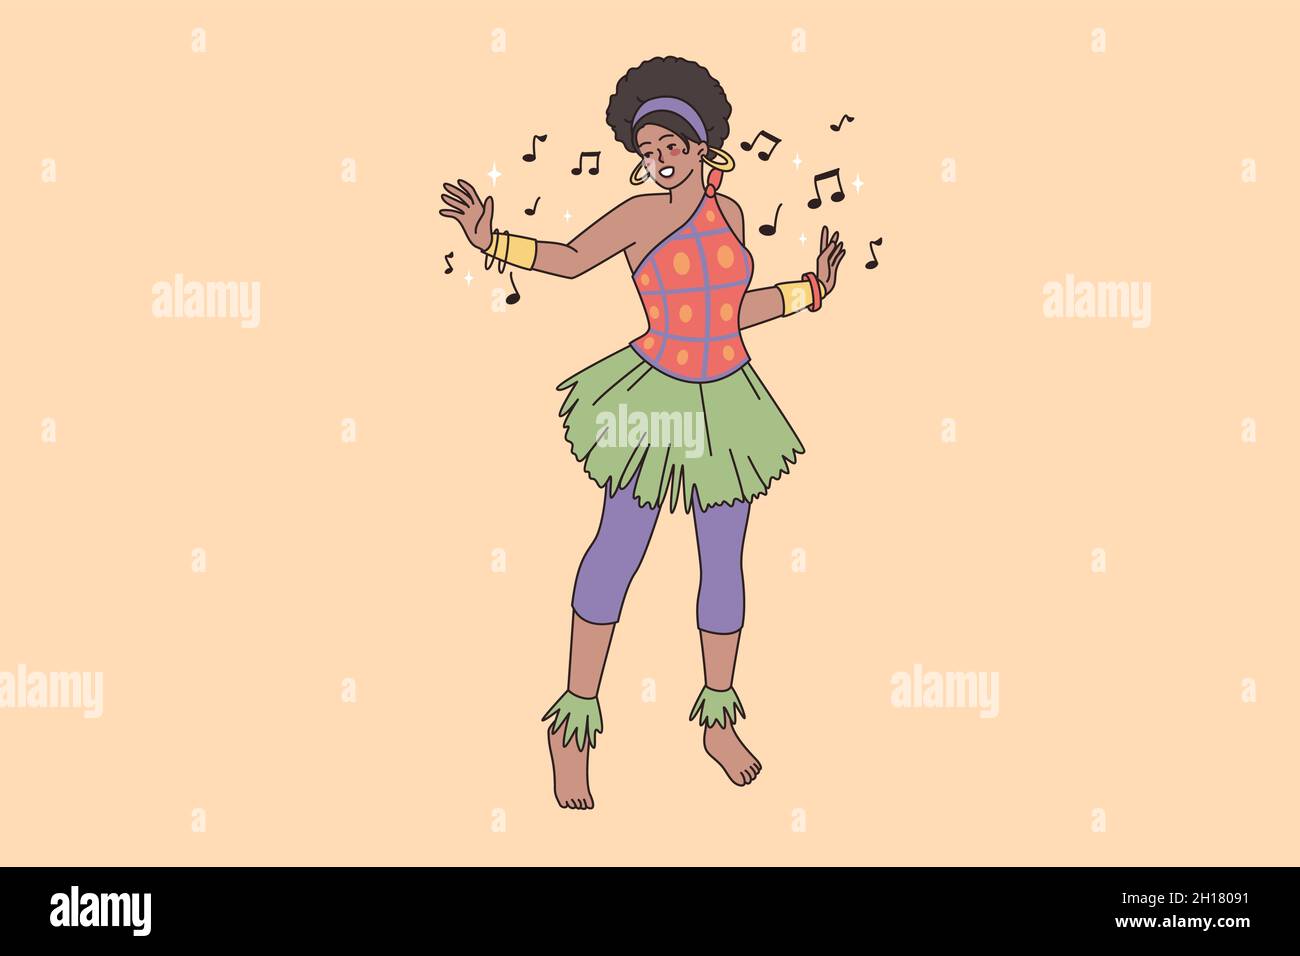 Femme africaine en danse traditionnelle nationale de costume faire des mouvements rituels.Tribu ethnique aborigène fille danseuse se détendre profiter de la musique jouer.Nationalité africaine, diversité.Illustration vectorielle, personnage de dessin animé. Illustration de Vecteur